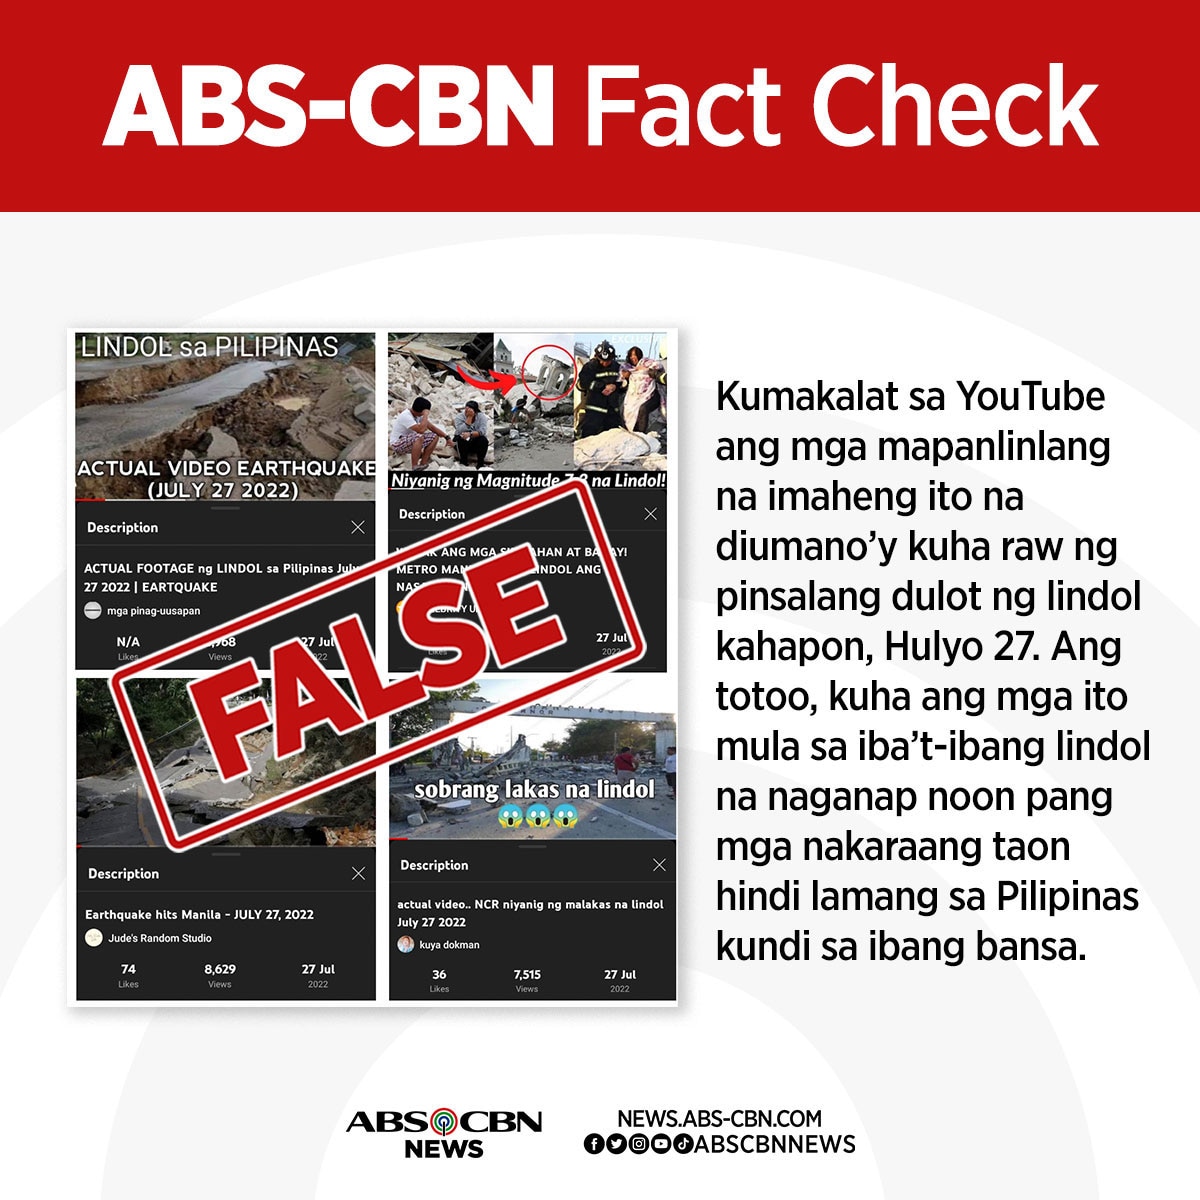 FACT CHECK: ‘Di ito mga larawan ng pinsala ng lindol sa Luzon noong Hulyo 27